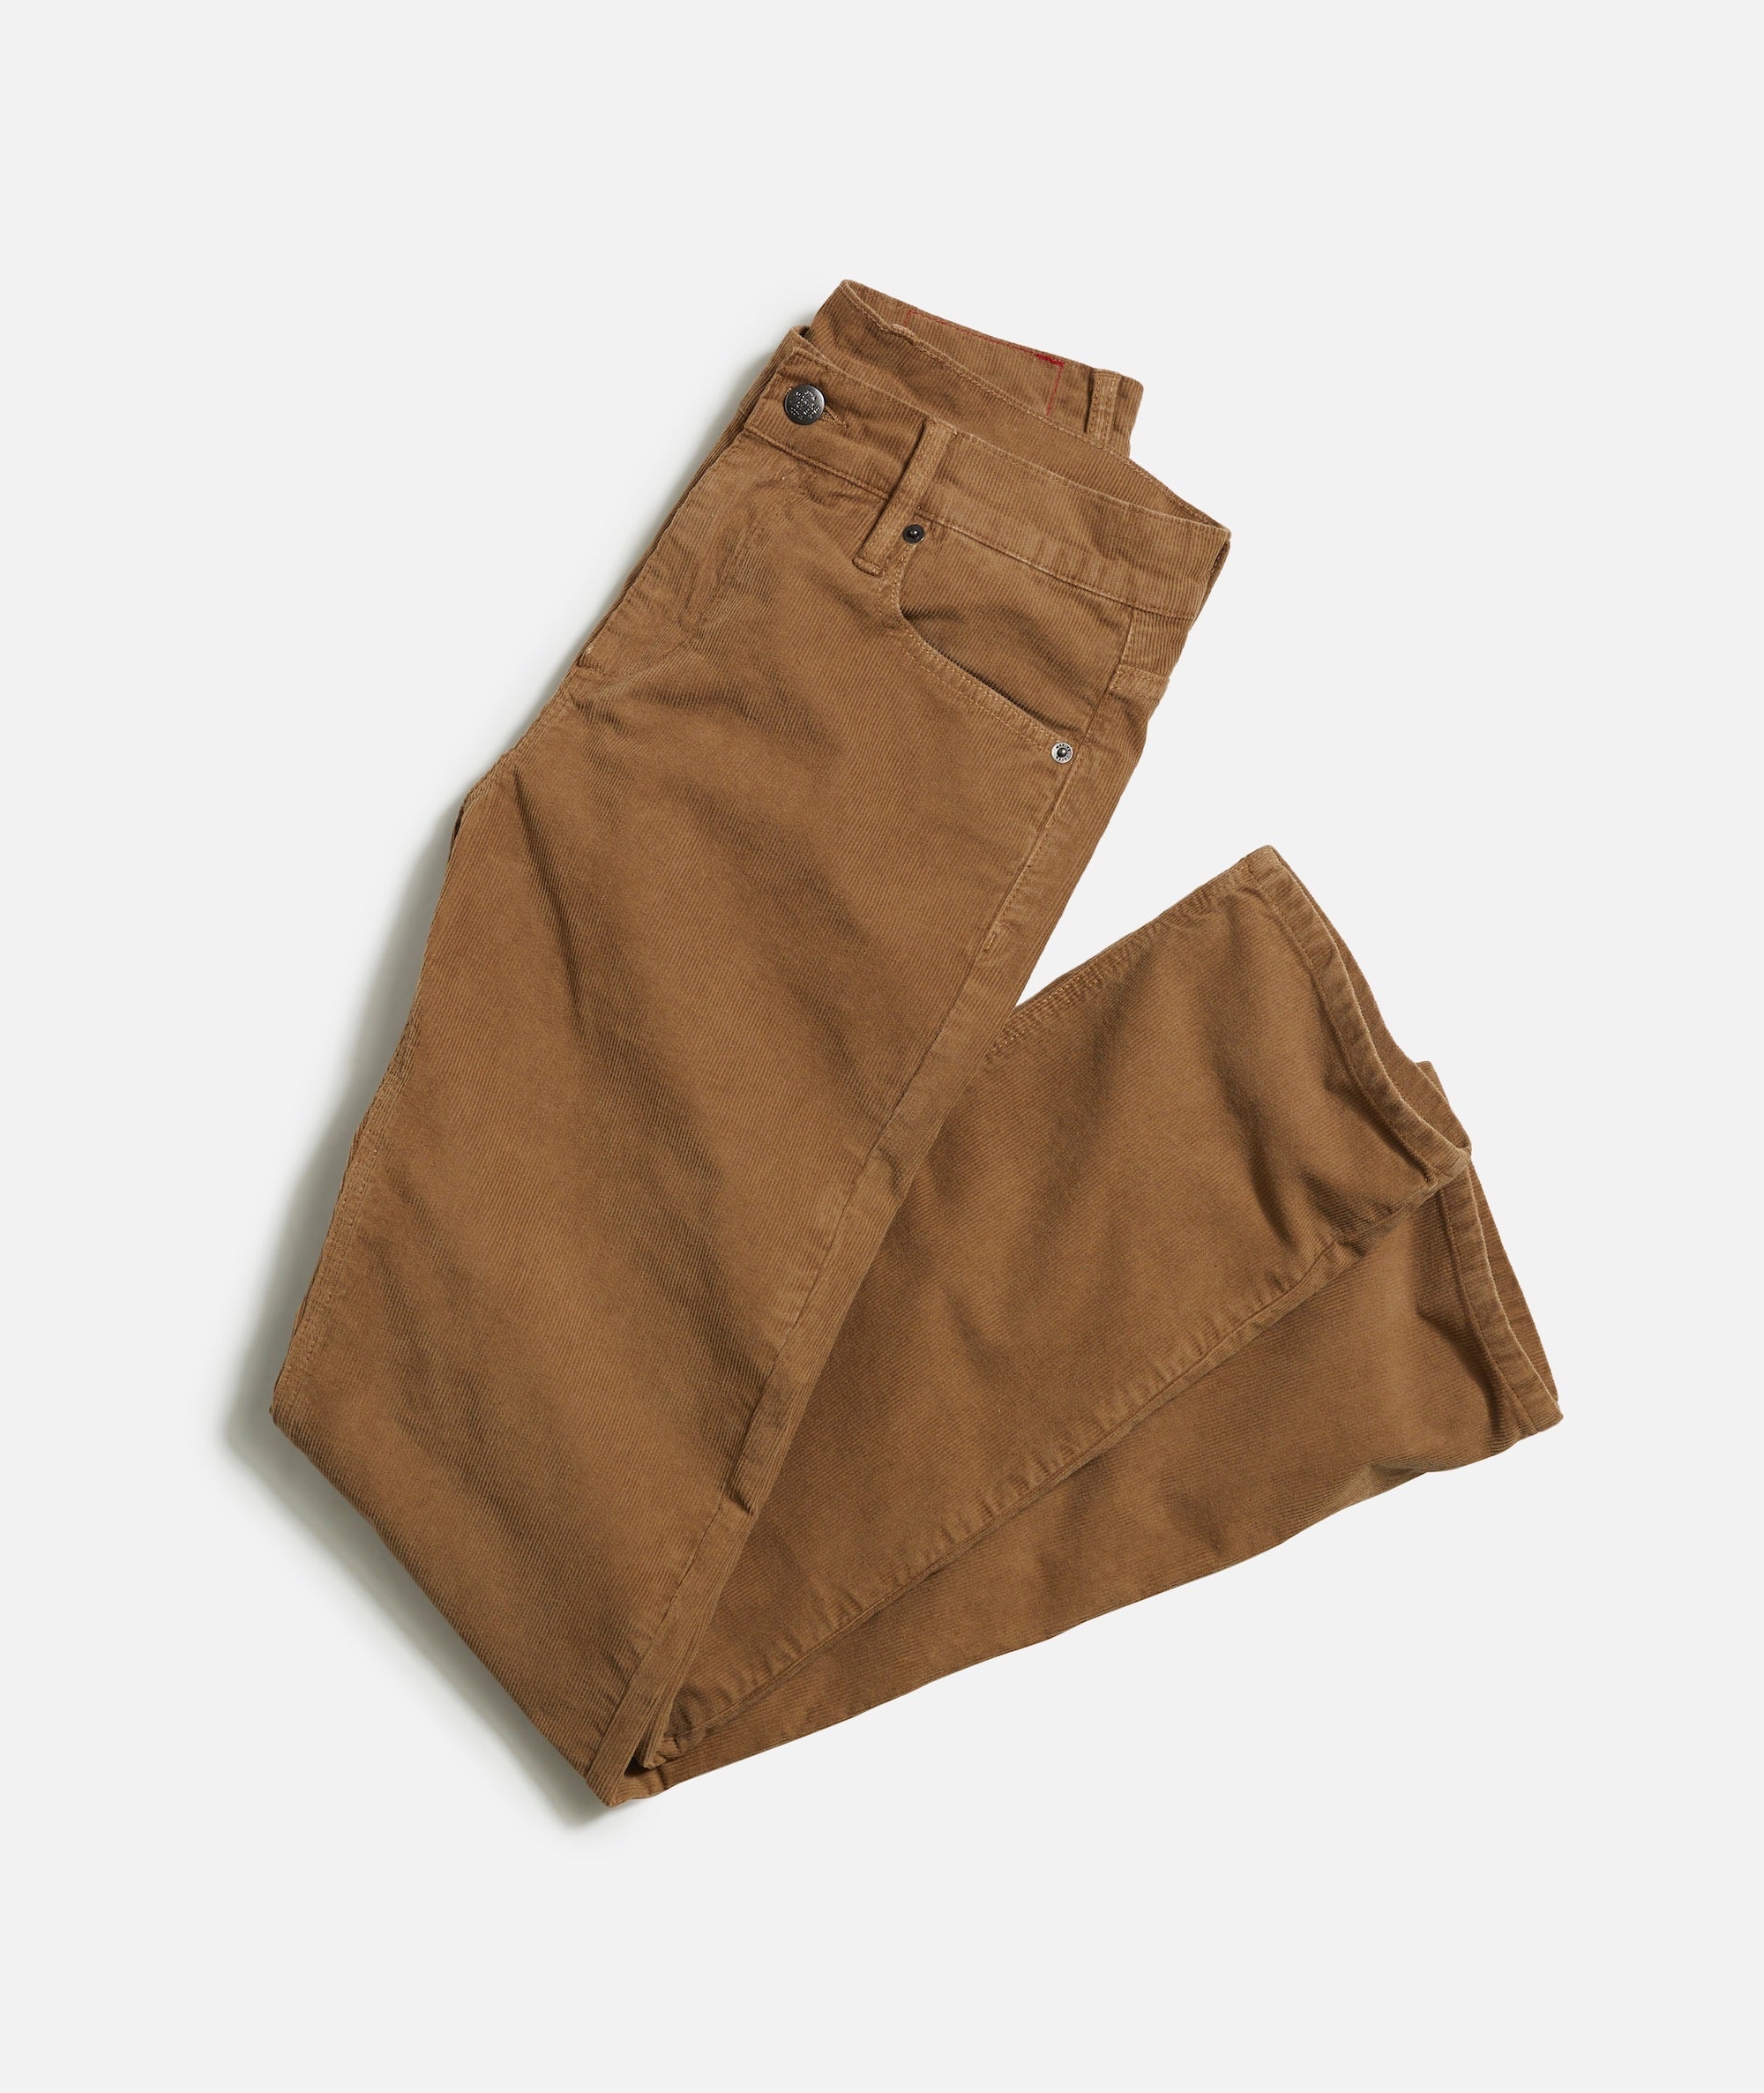 Regular Fit Cotton Wide-Wale Corduroy Pants